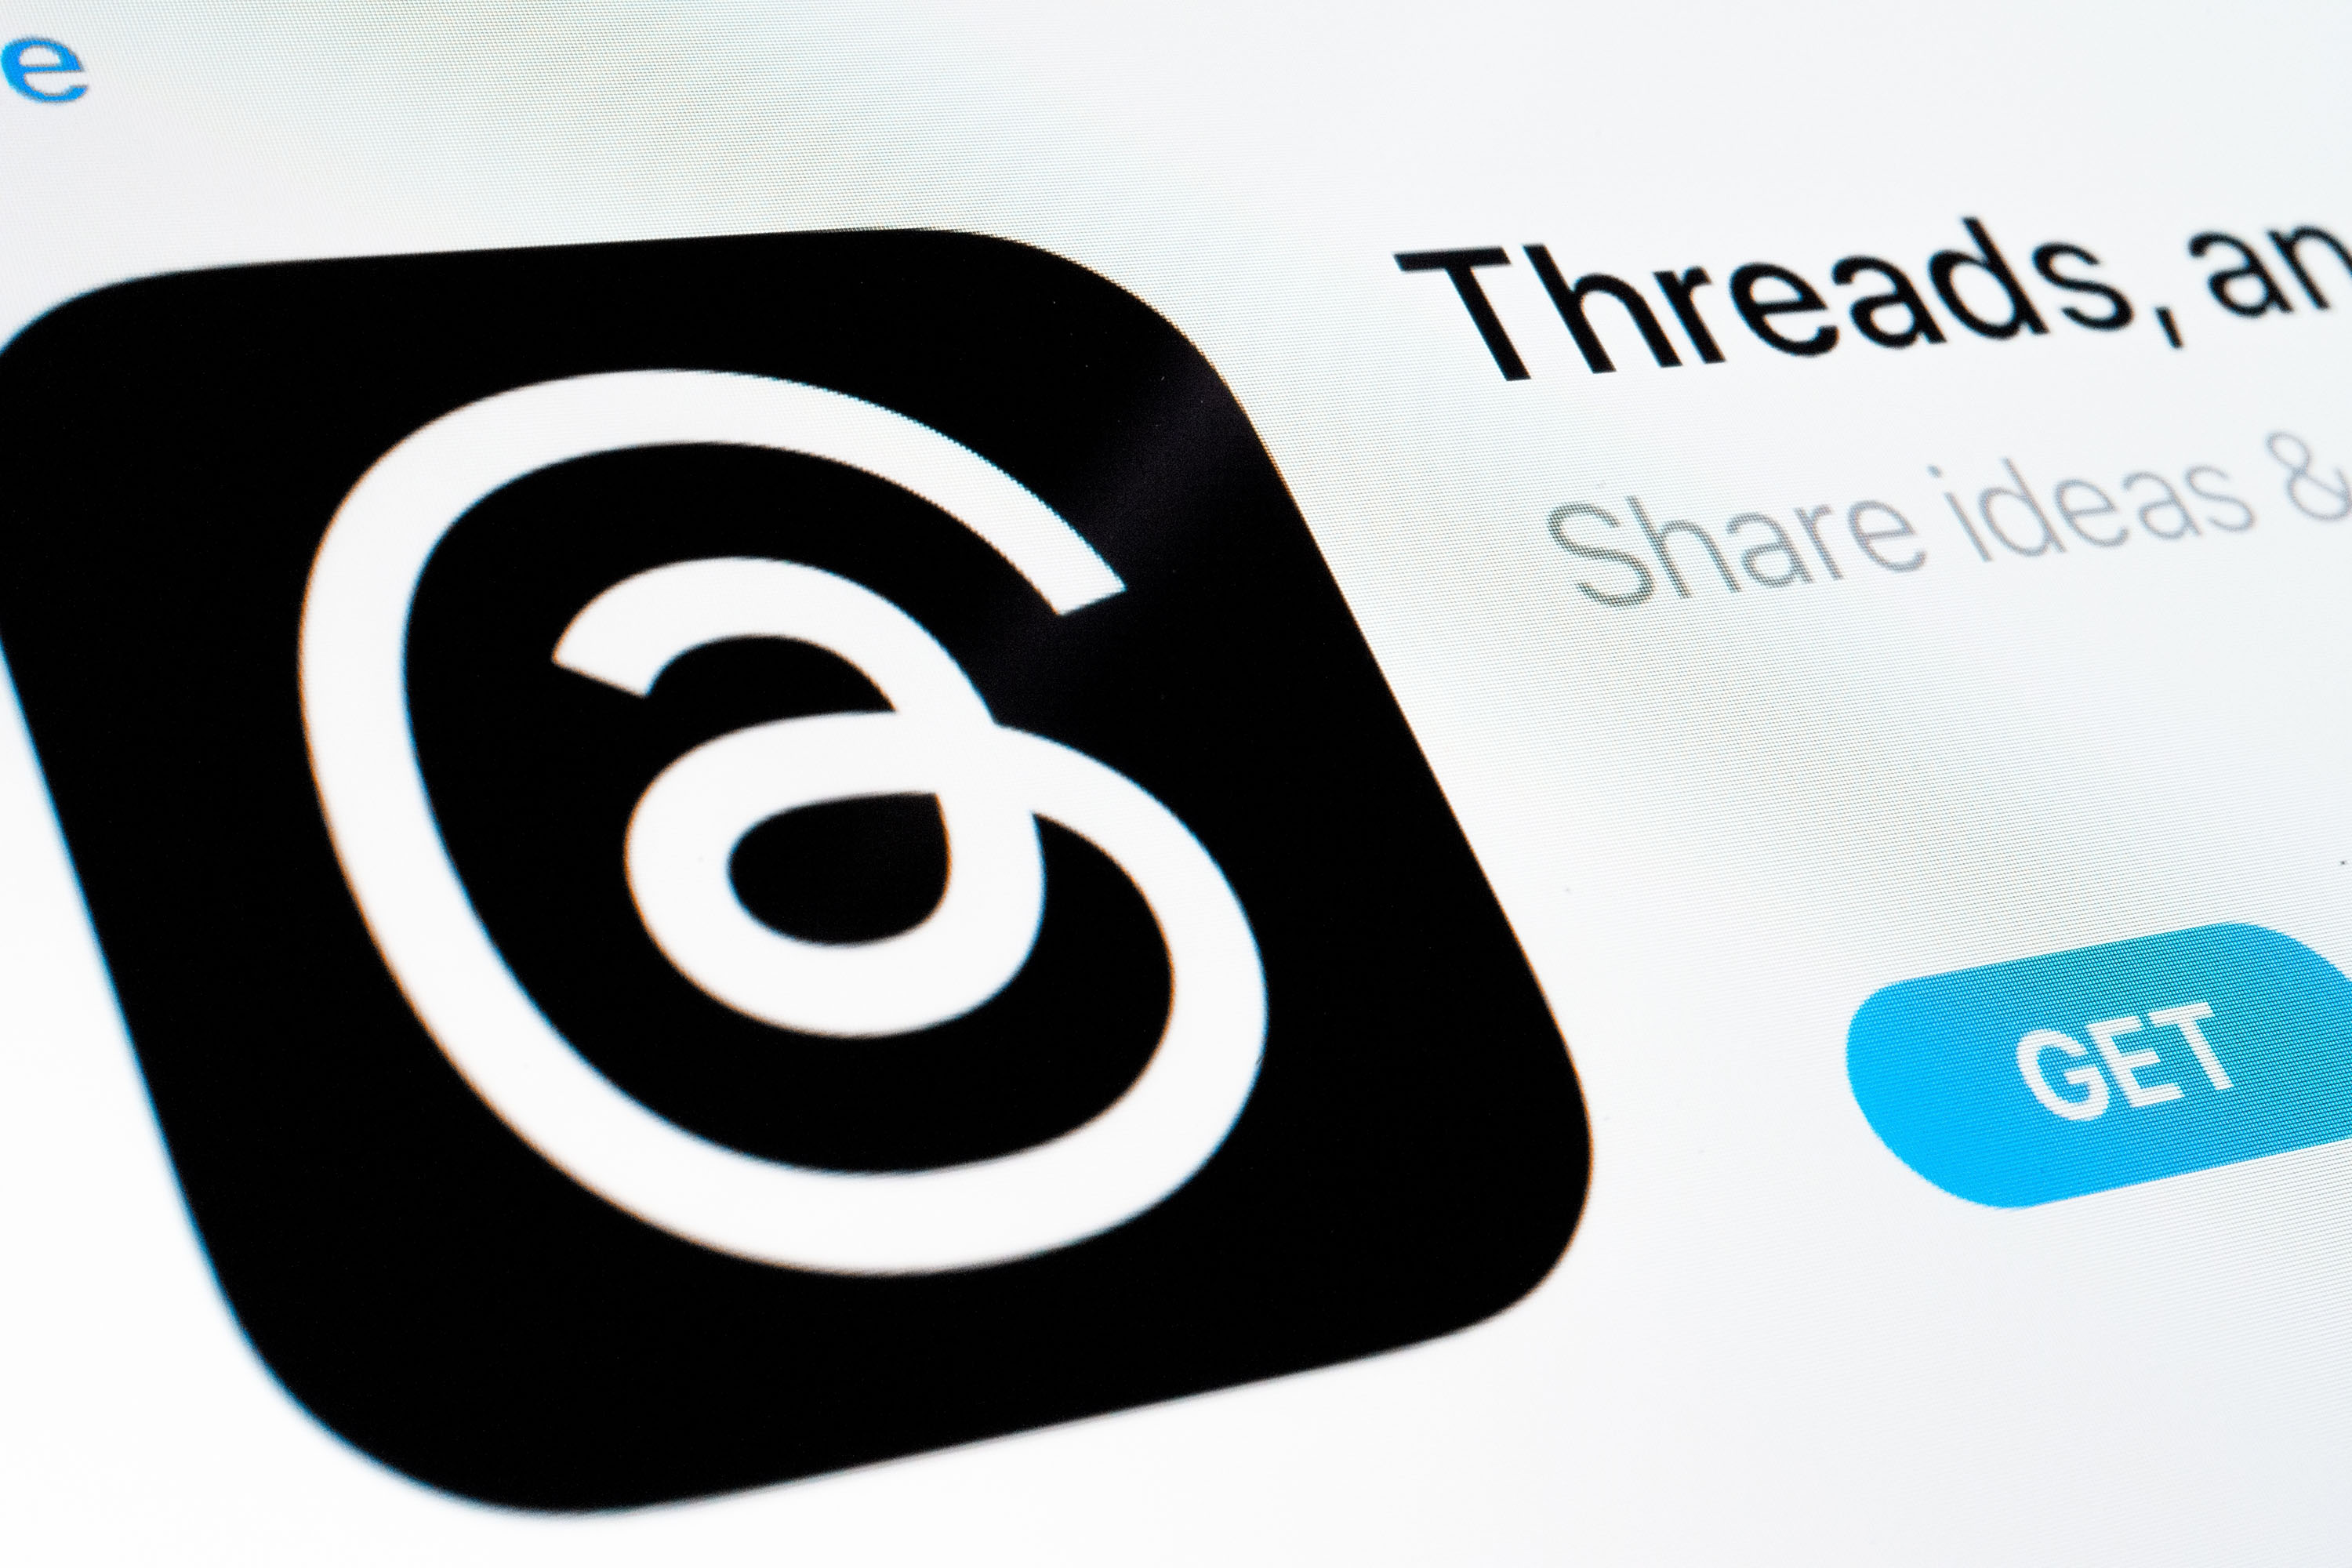 Threads est maintenant l'application la plus téléchargée sur iPhone aux États-Unis. Bientôt dans le monde ?